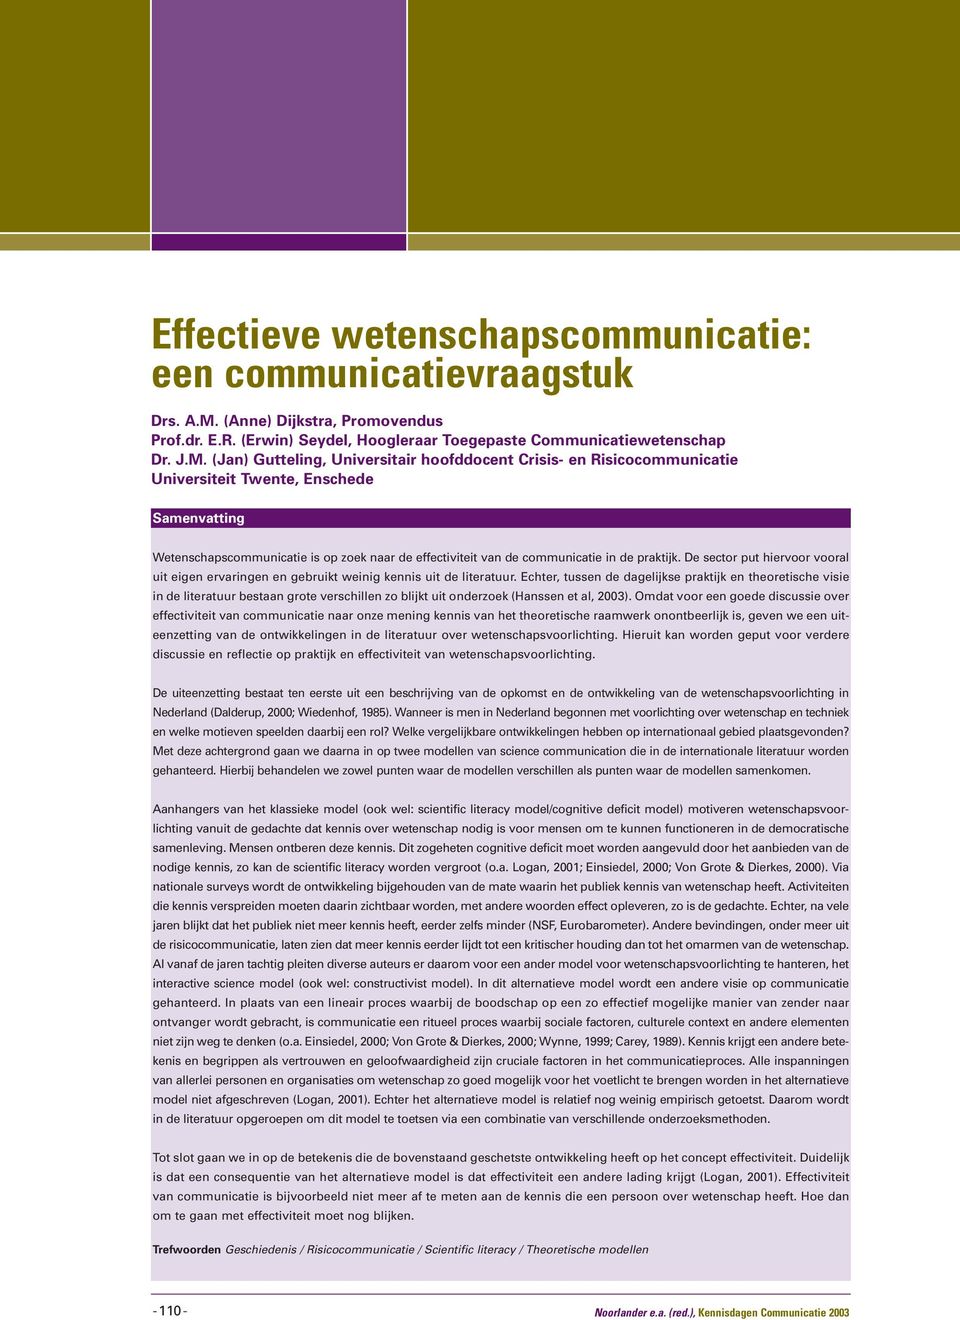 (Jan) Gutteling, Universitair hoofddocent Crisis- en Risicocommunicatie Universiteit Twente, Enschede Samenvatting Wetenschapscommunicatie is op zoek naar de effectiviteit van de communicatie in de